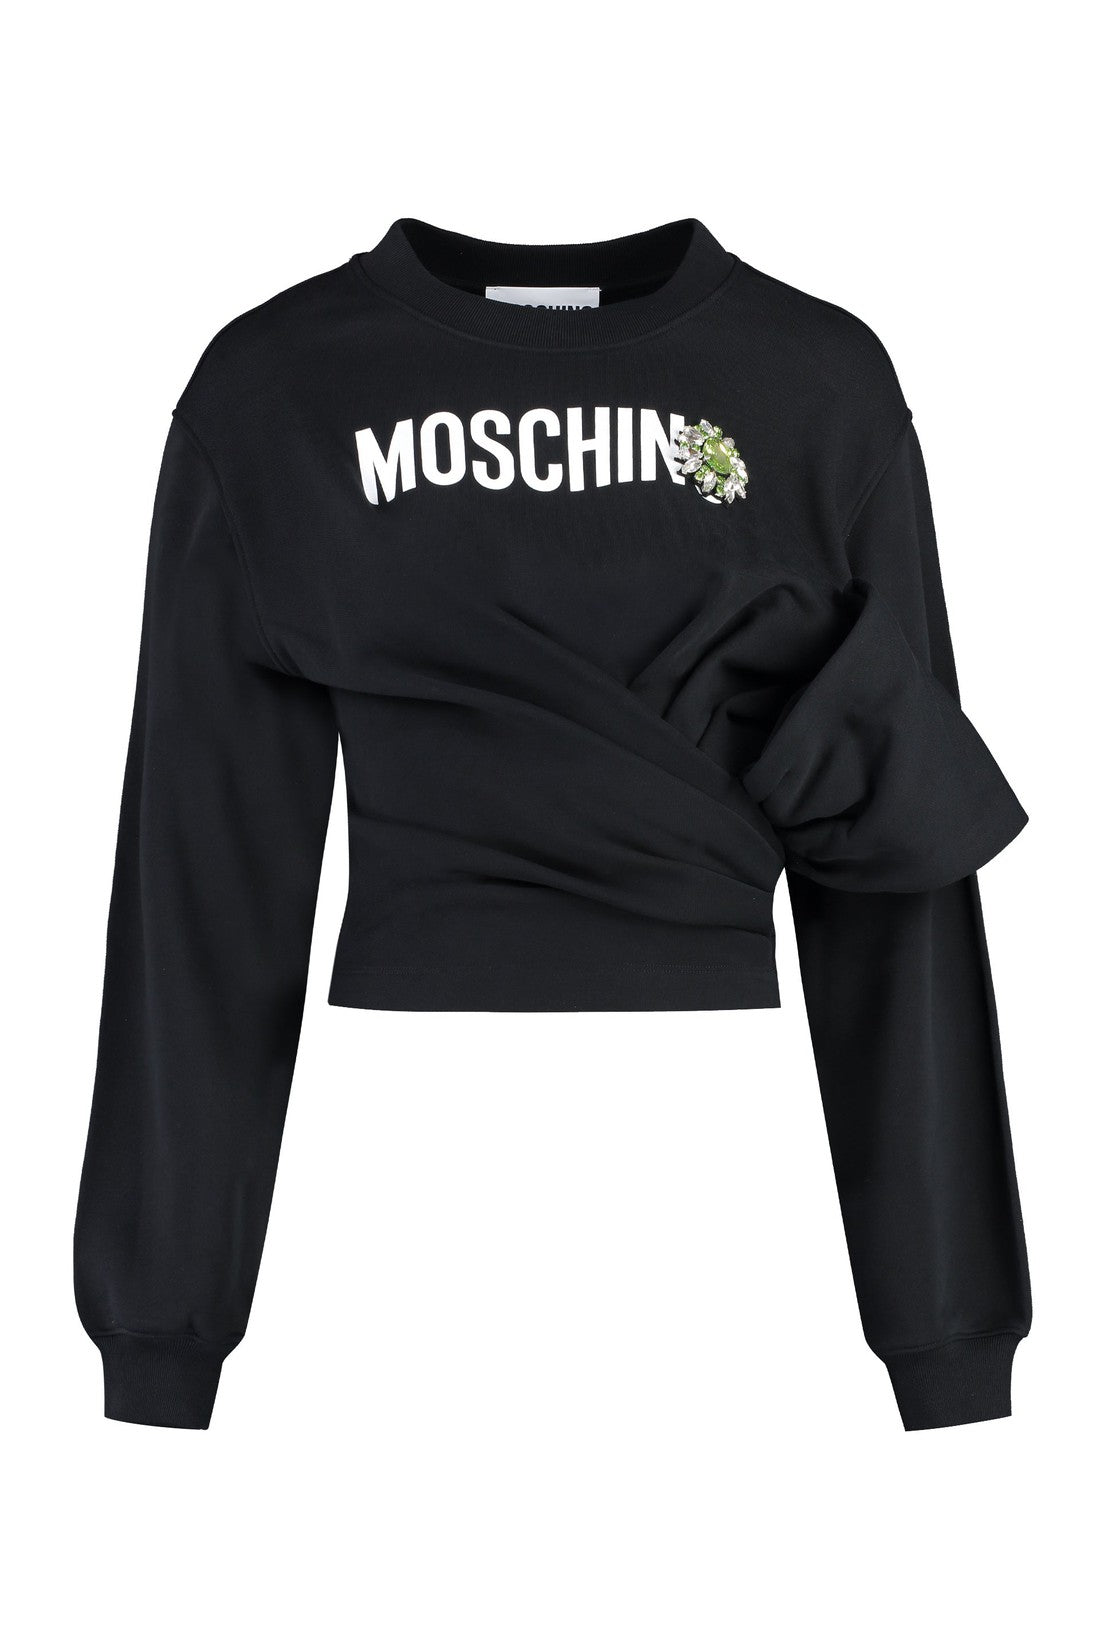 Moschino-OUTLET-SALE-Logo sweatshirt-ARCHIVIST